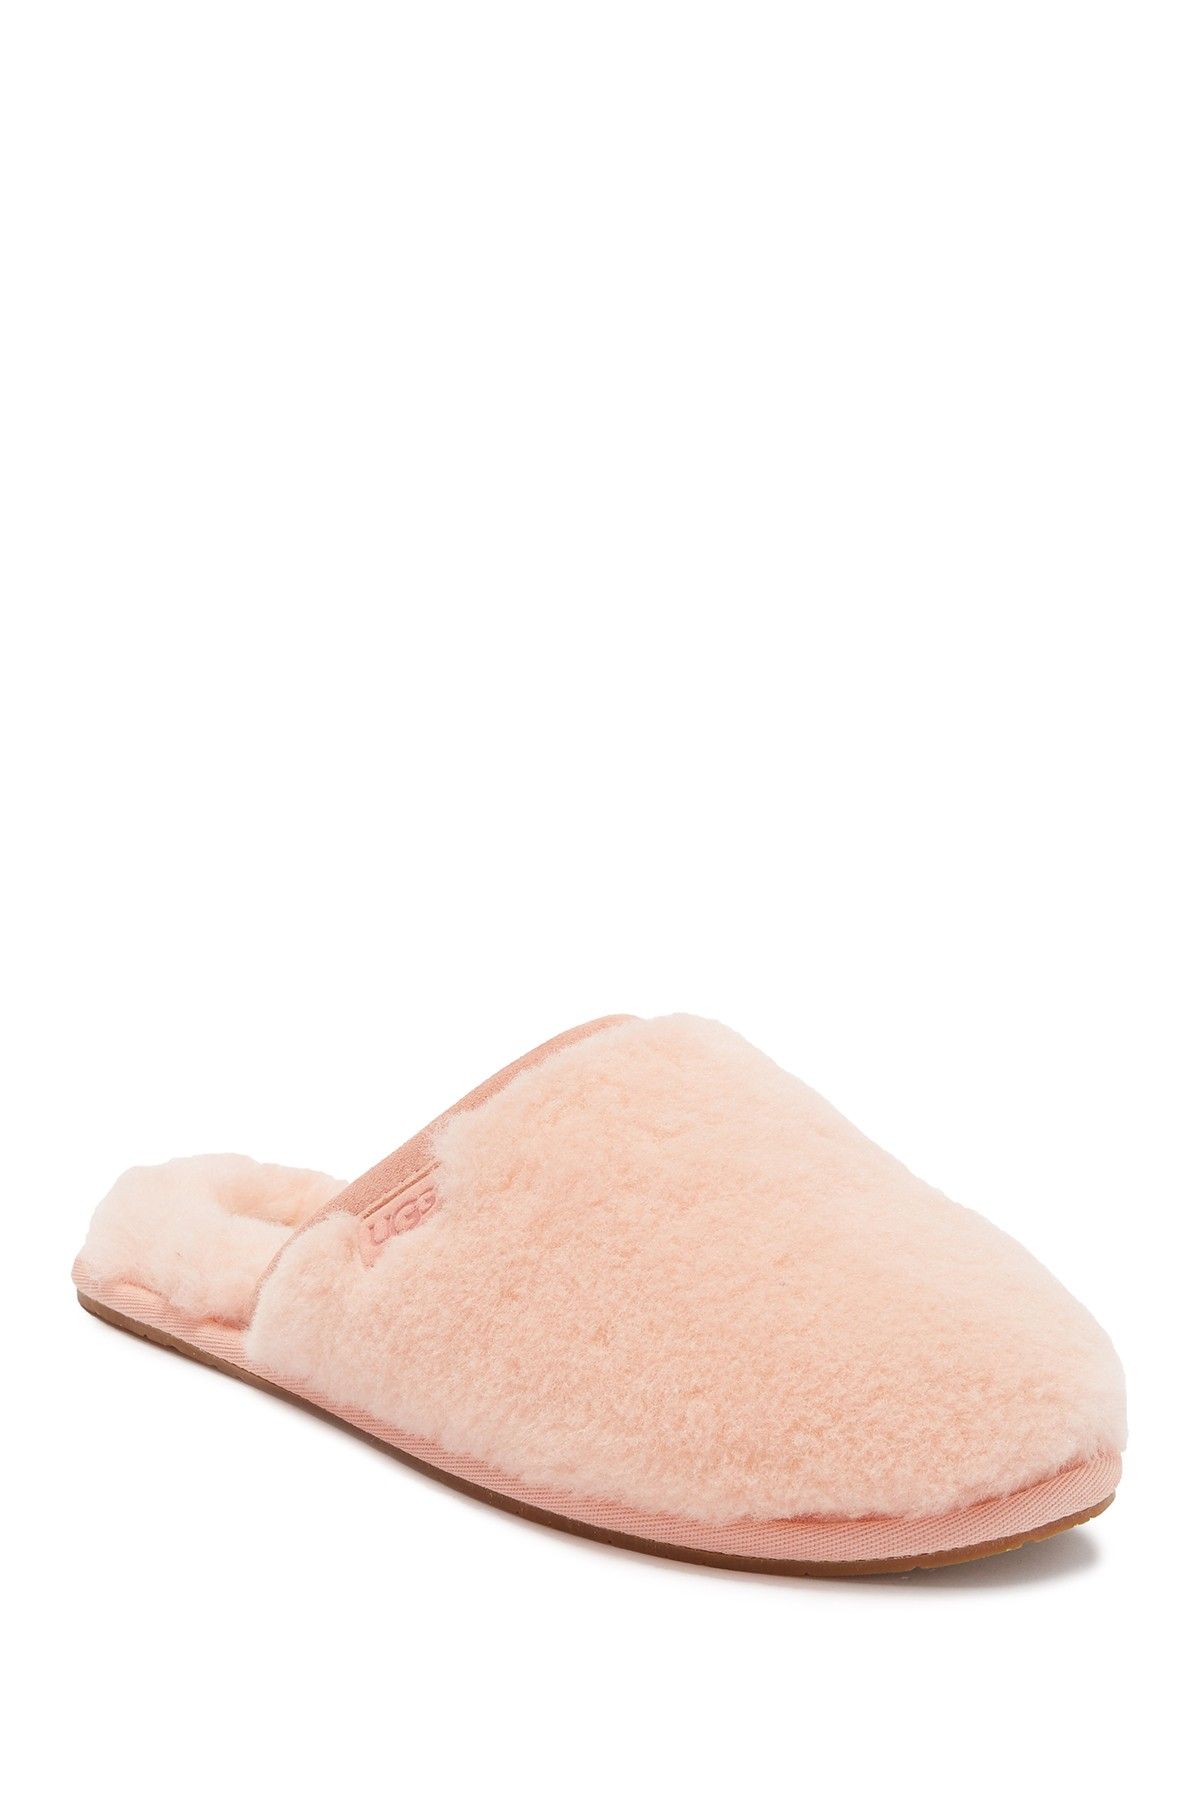 nordstrom rack womens ugg slippers